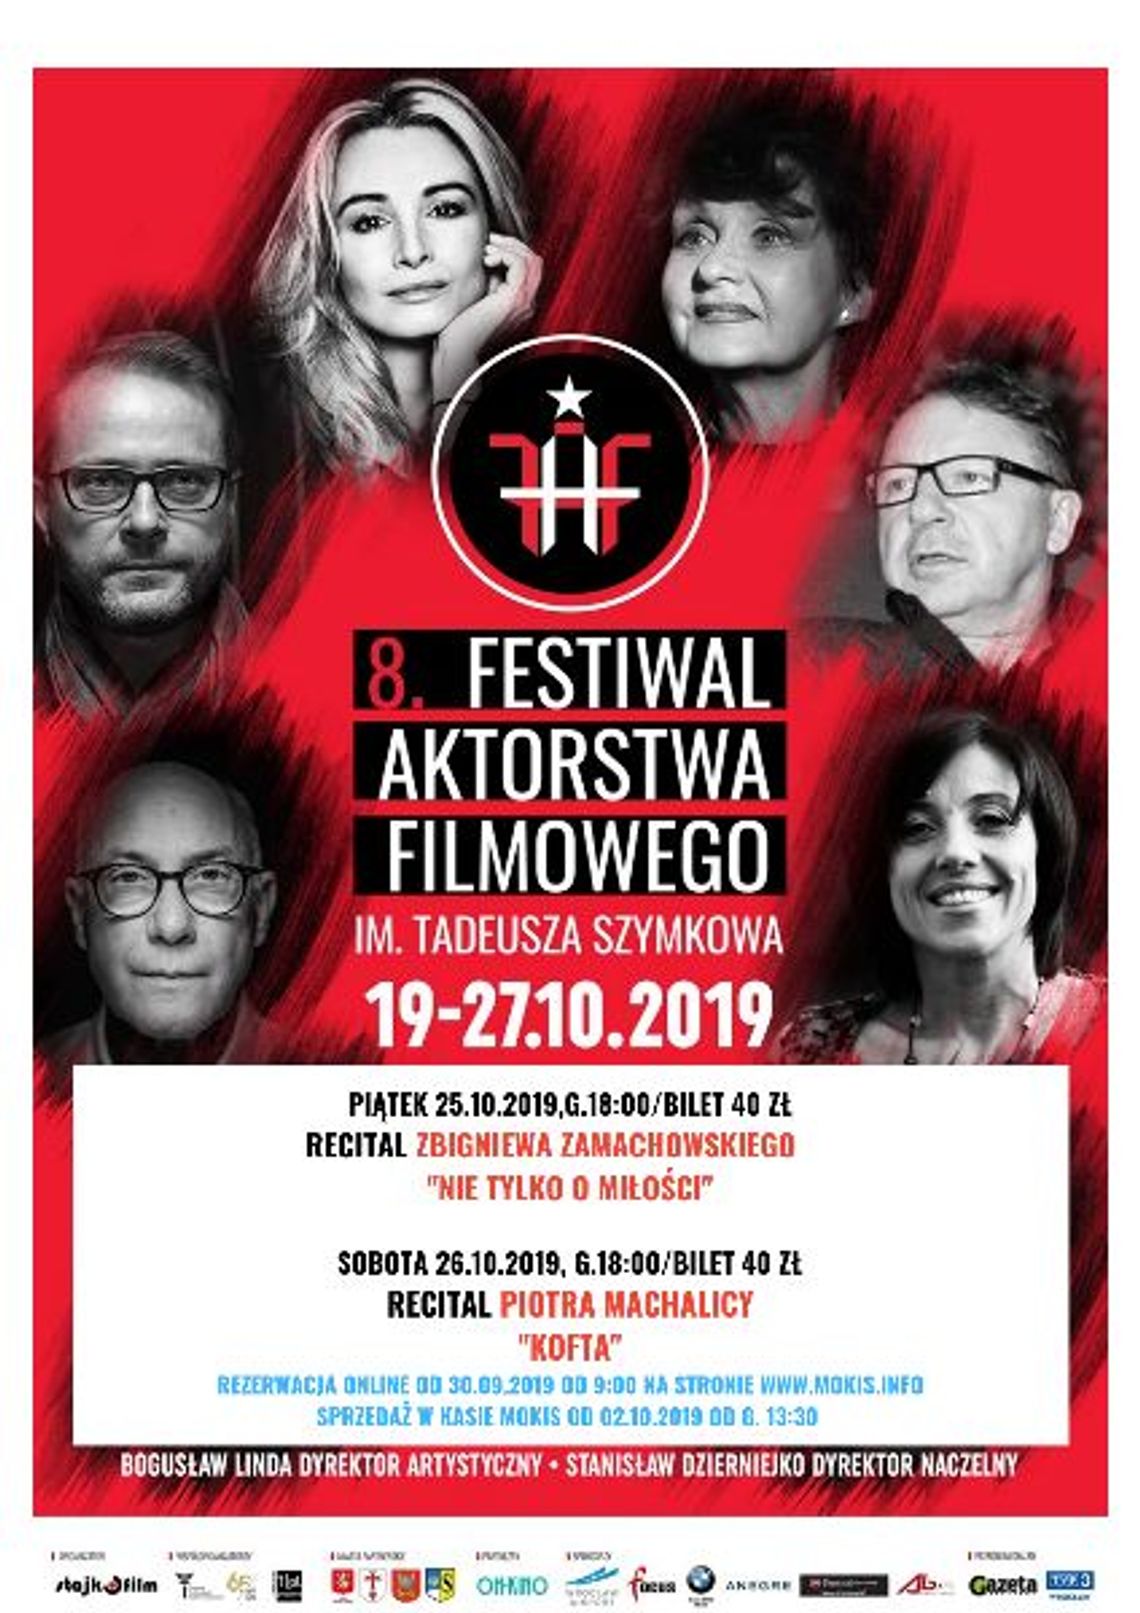 8. FESTIWAL AKTORSTWA FILMOWEGO IM. TADEUSZA SZYMKOWA – 25-26.10.2019